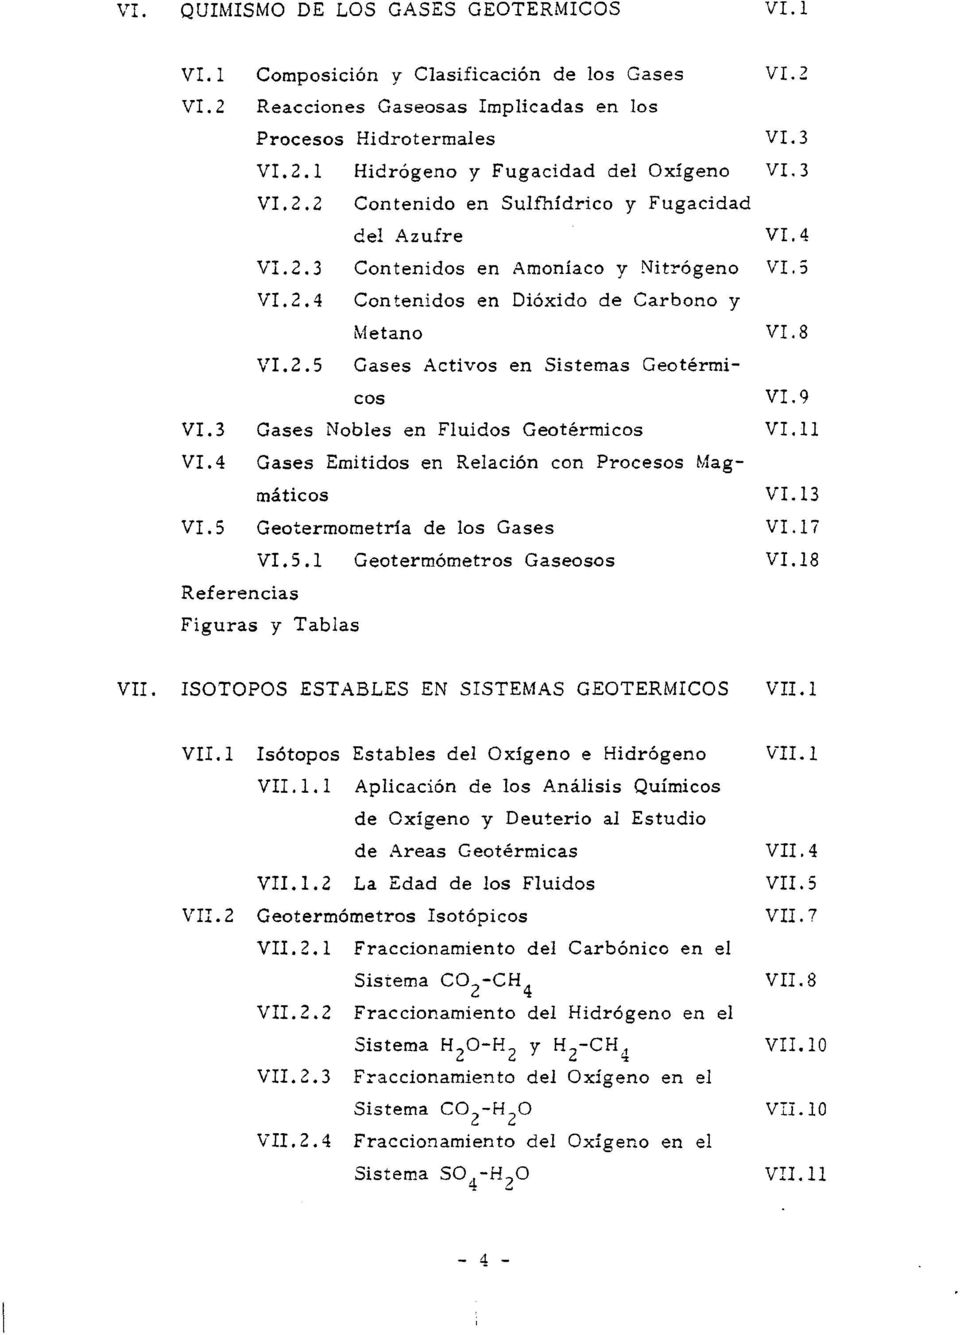 9 VI.3 Gases Nobles en Fluidos Geotérmicos VI.11 VI.4 Gases Emitidos en Relación con Procesos M;agmáticos V I.13 VI. S Geotermometría de los Gases VI.17 VI.5.1 Geotermómetros Gaseosos VI.